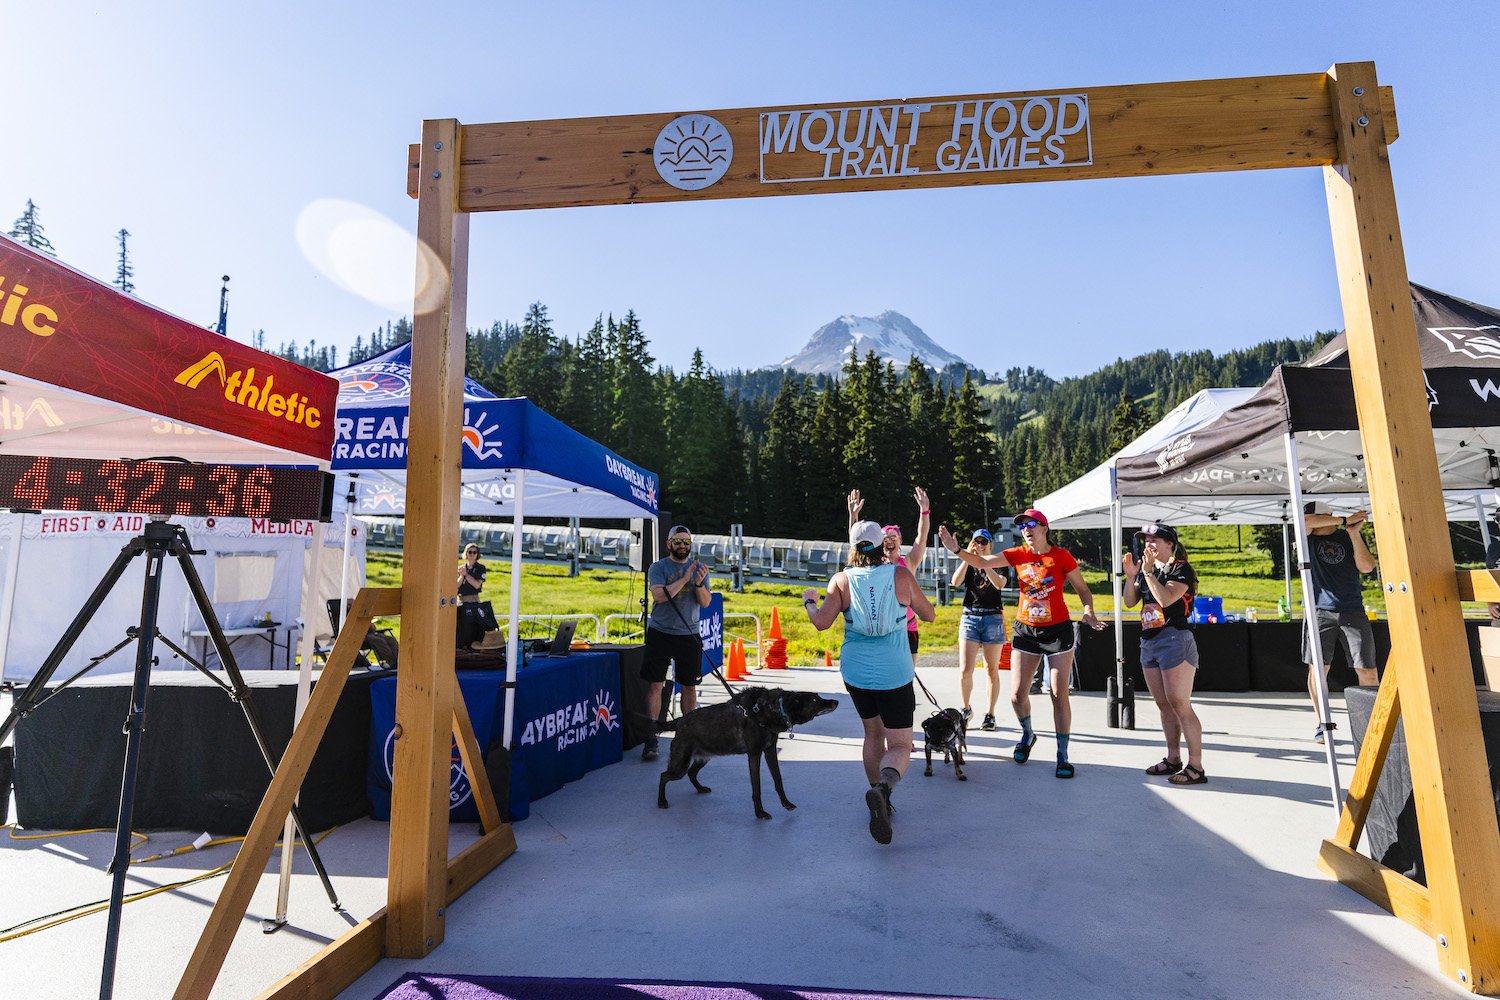 Daybreak-Racing-Mt-Hood-Trail-Games-1048-B.jpg